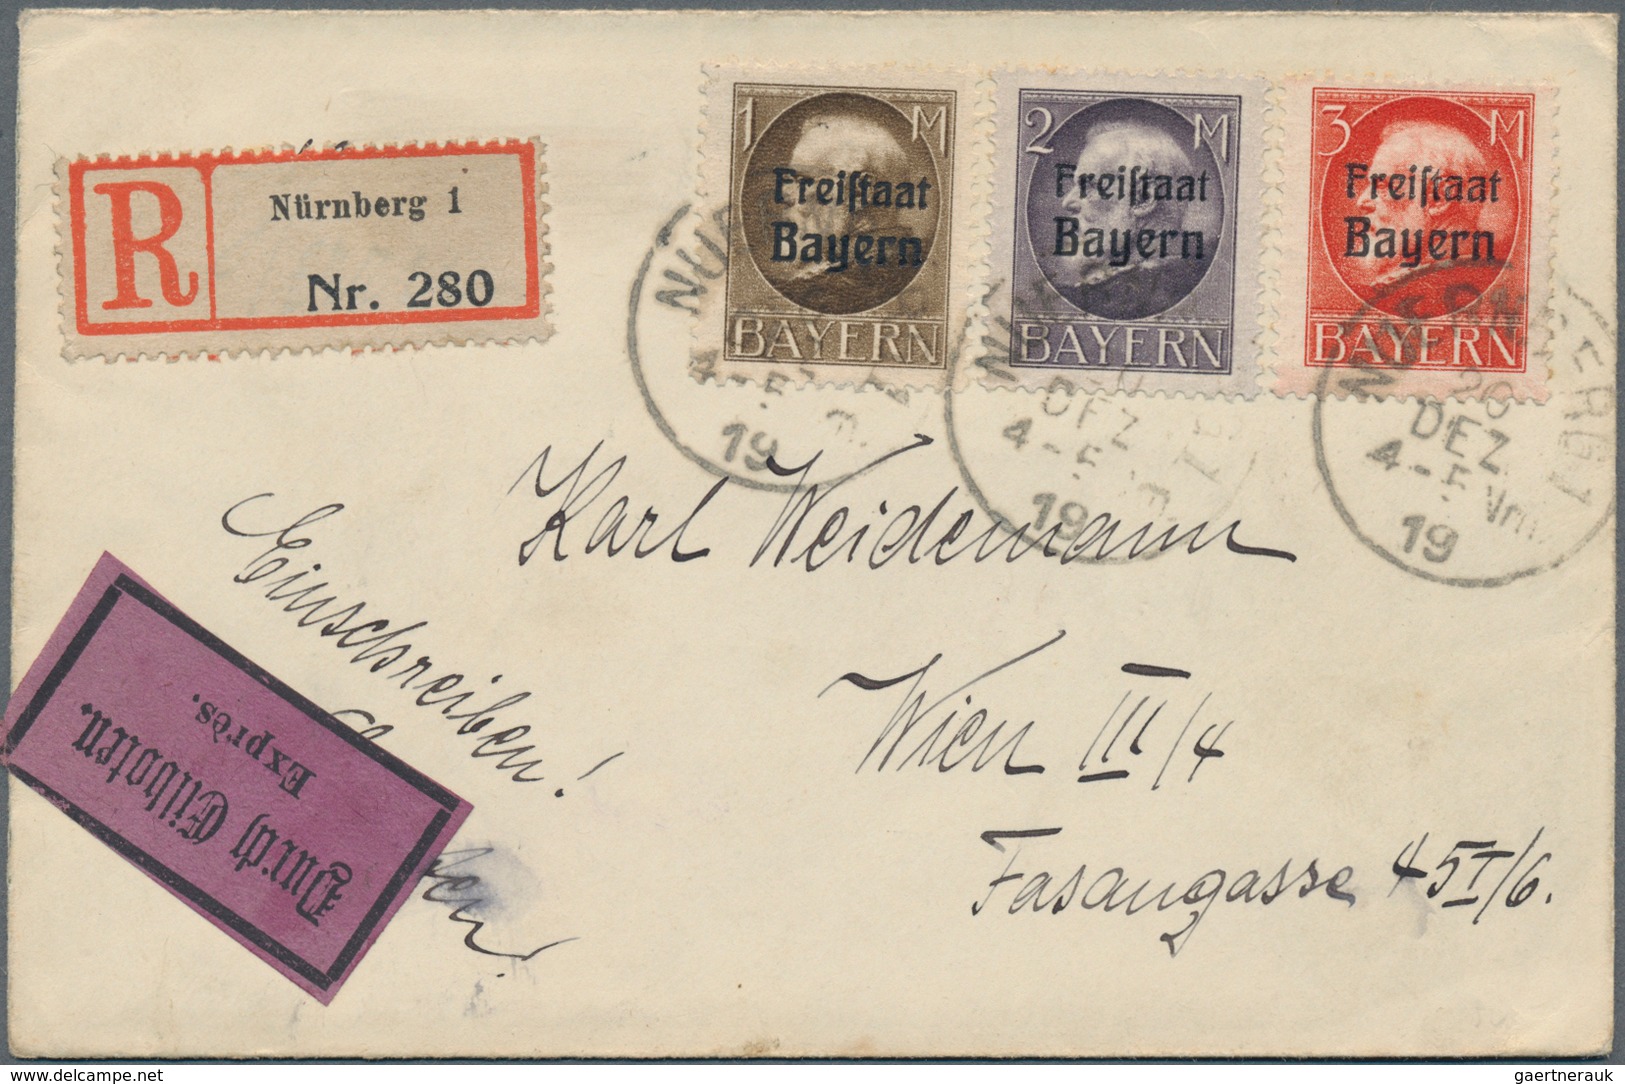 Bayern - Marken und Briefe: 1870/1920 (ca.), vielseitige Partie von fast 150 Briefen und Karten, dab